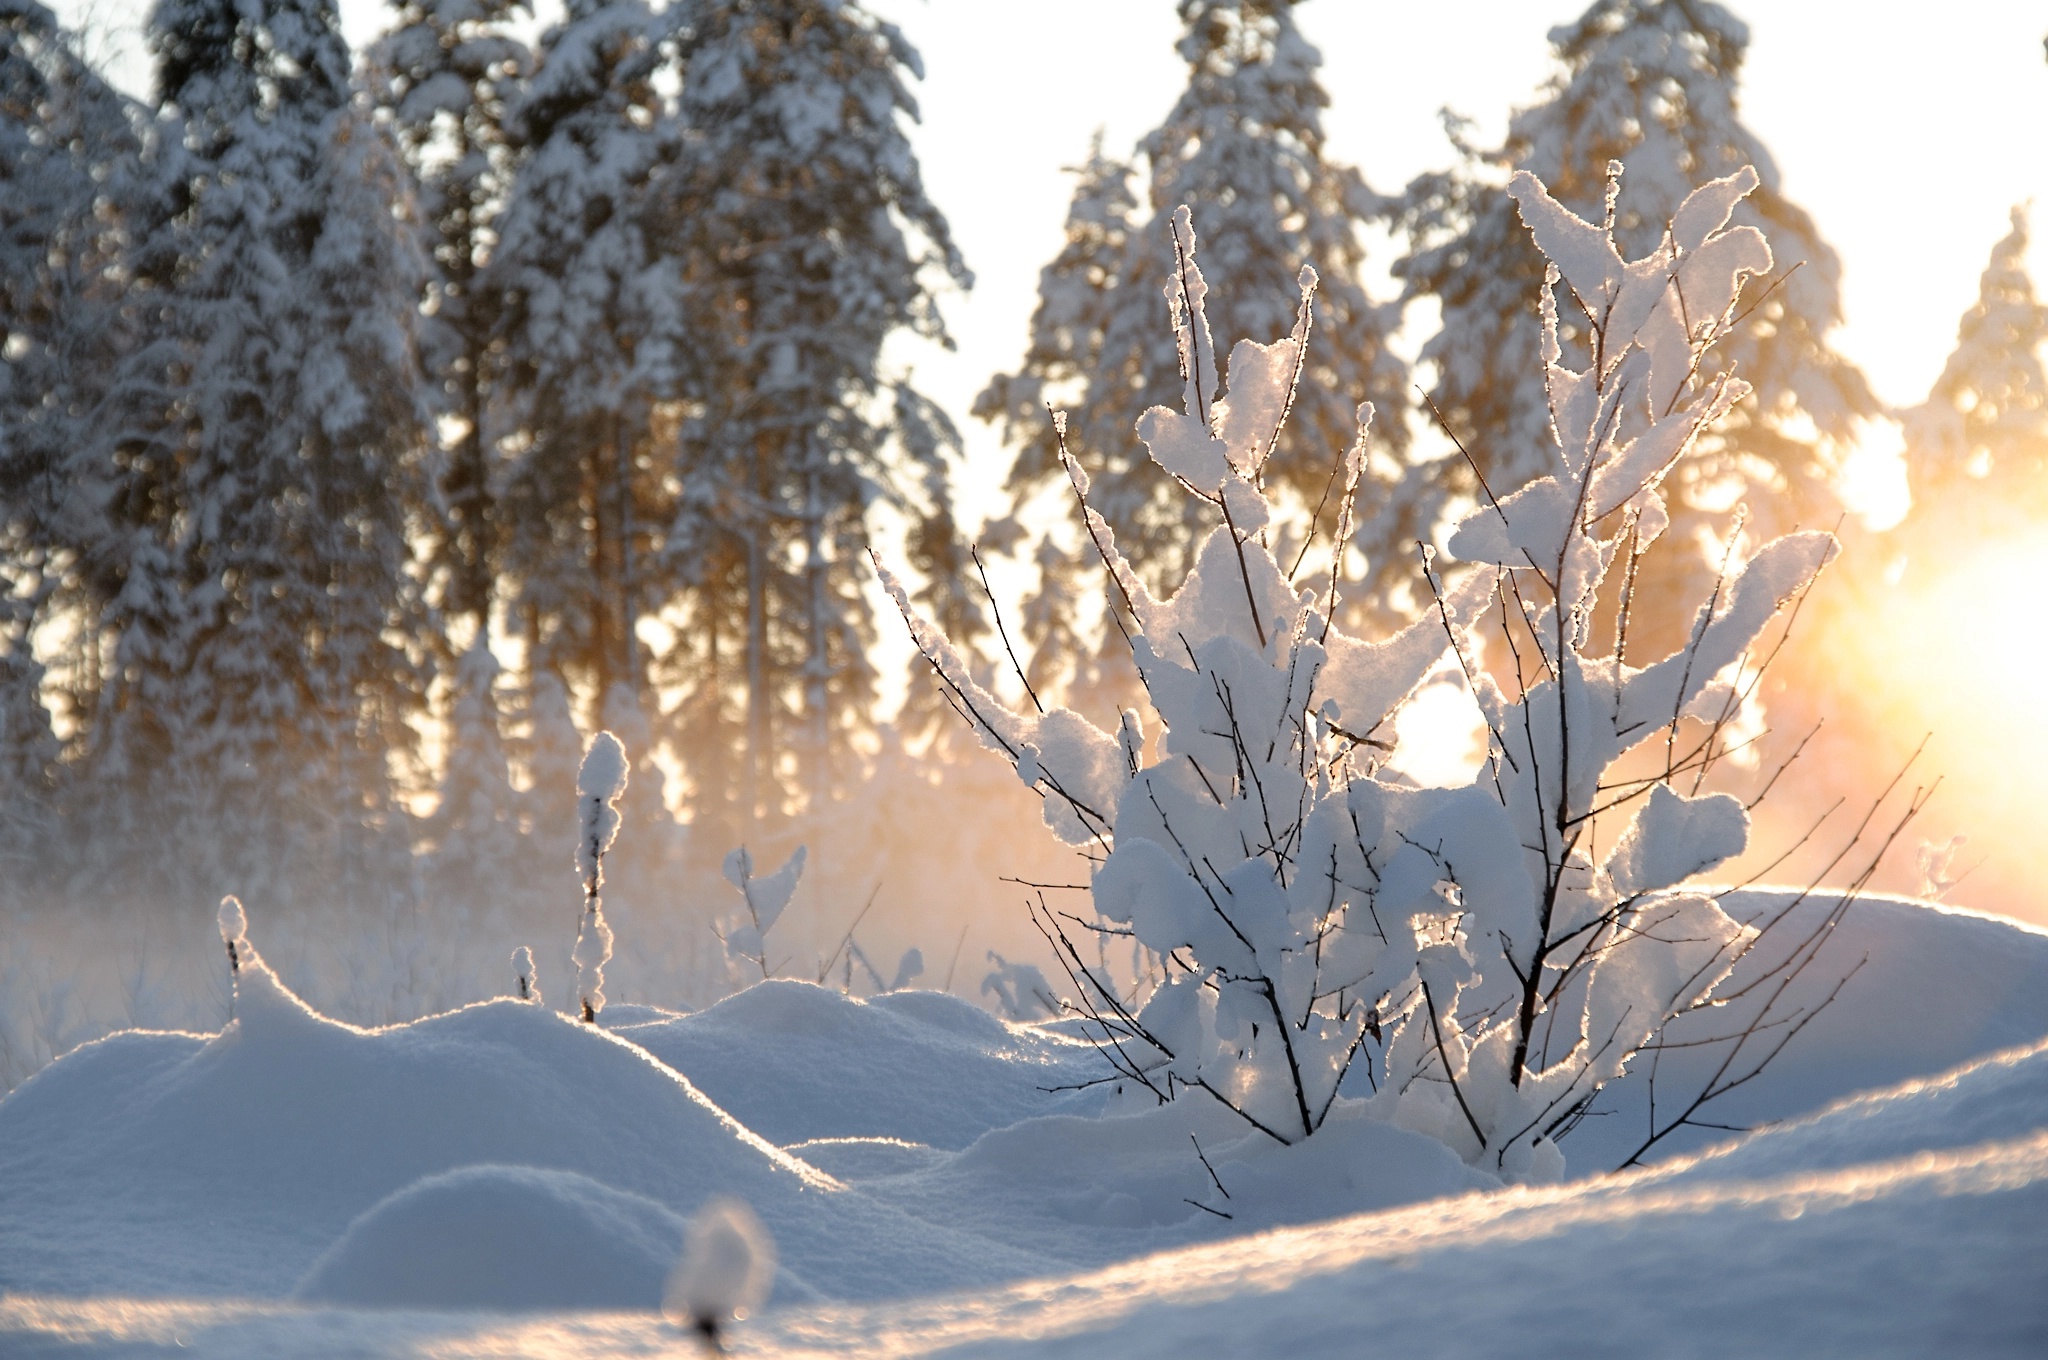 Снежок утром. Зимняя природа. Зима солнце. Деревья в снегу. Солнечный зимний день.